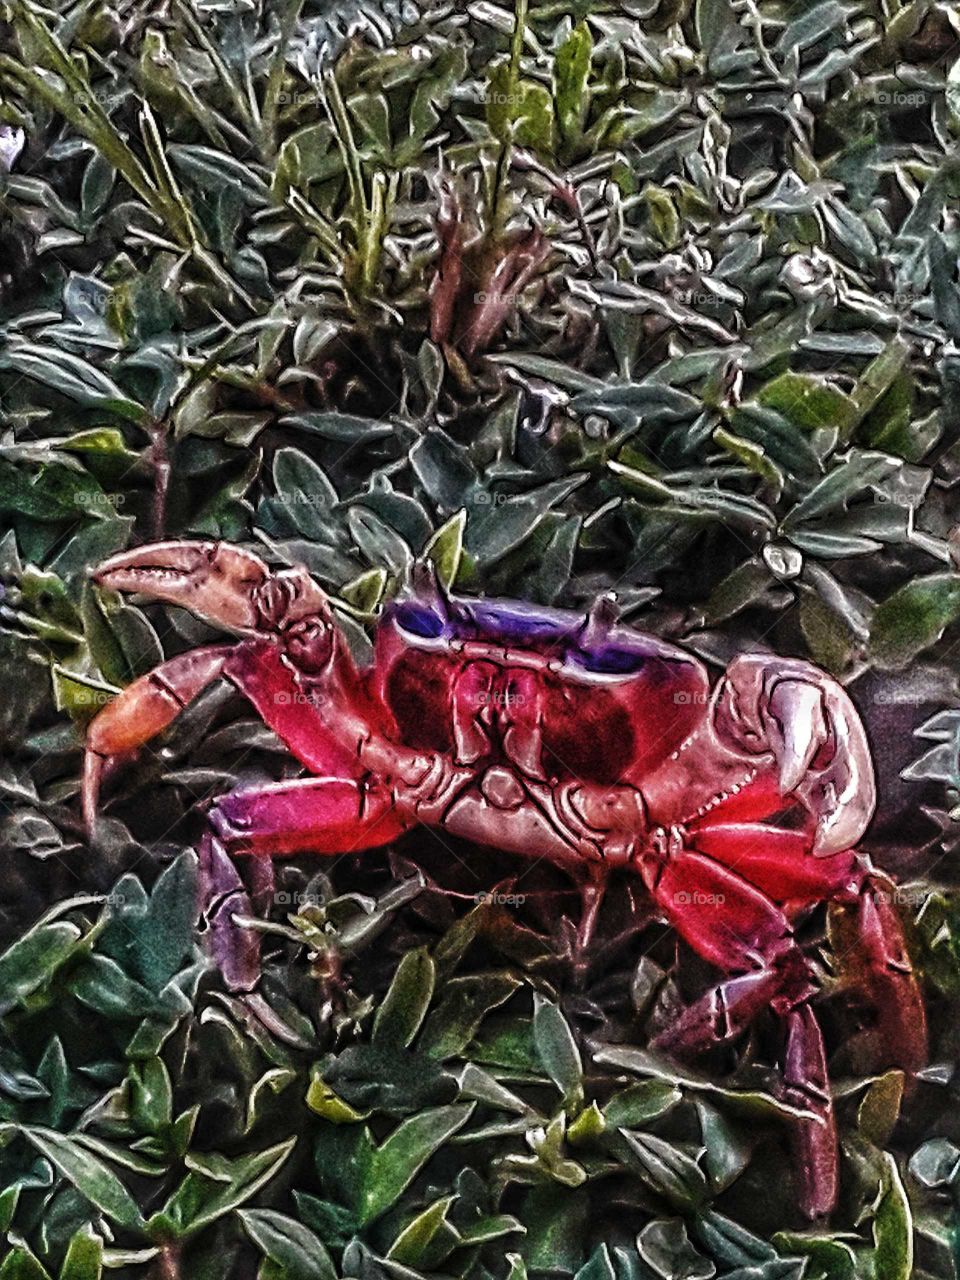 Florida land crab